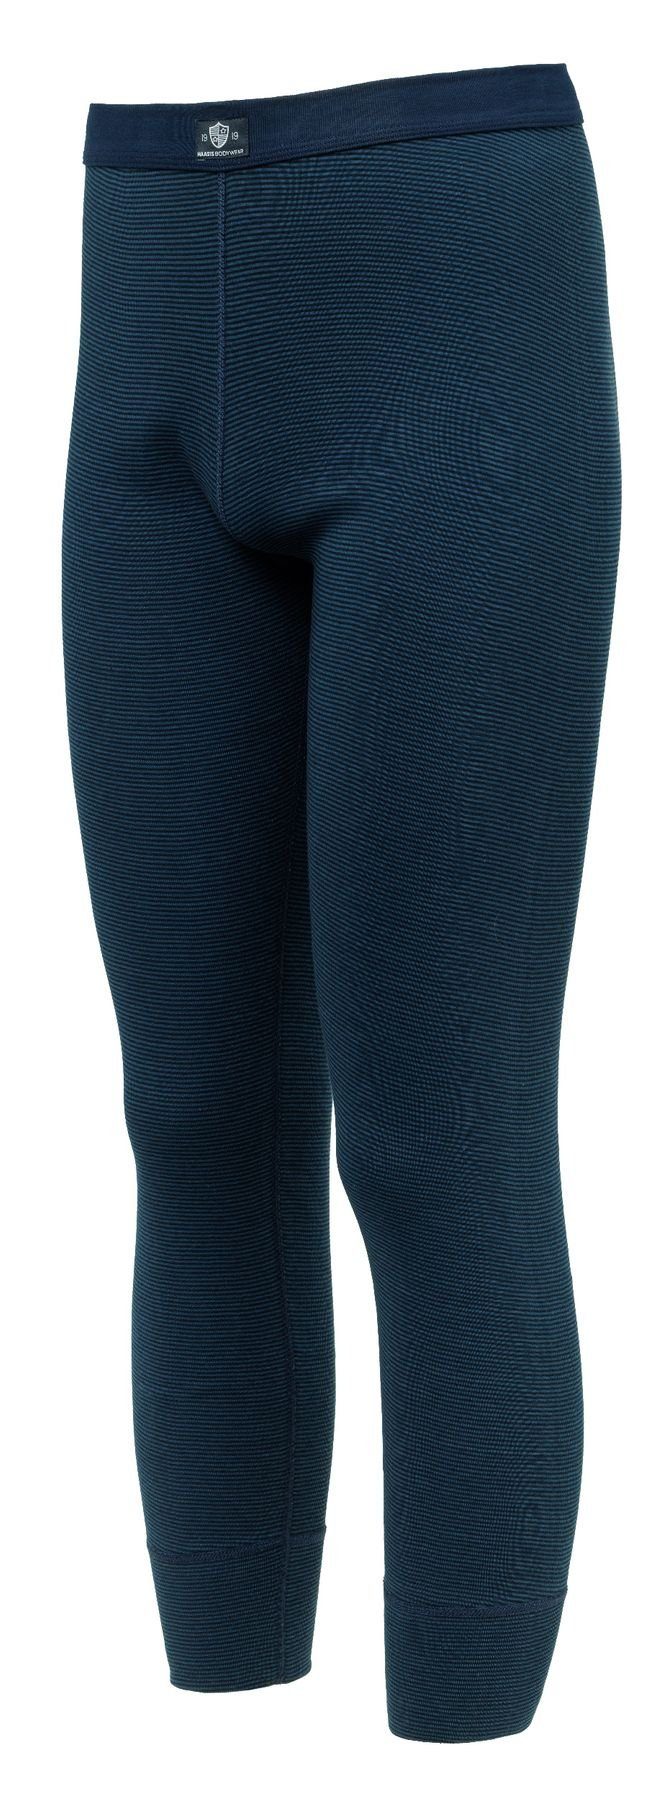 formbeständig, 1919 77219873-navy/jeansblau pflegeleicht, Funktionshose Pack) 2-tlg., HAASIS strapazierfähig Bodywear Optimale Passform, (Packung, 2er